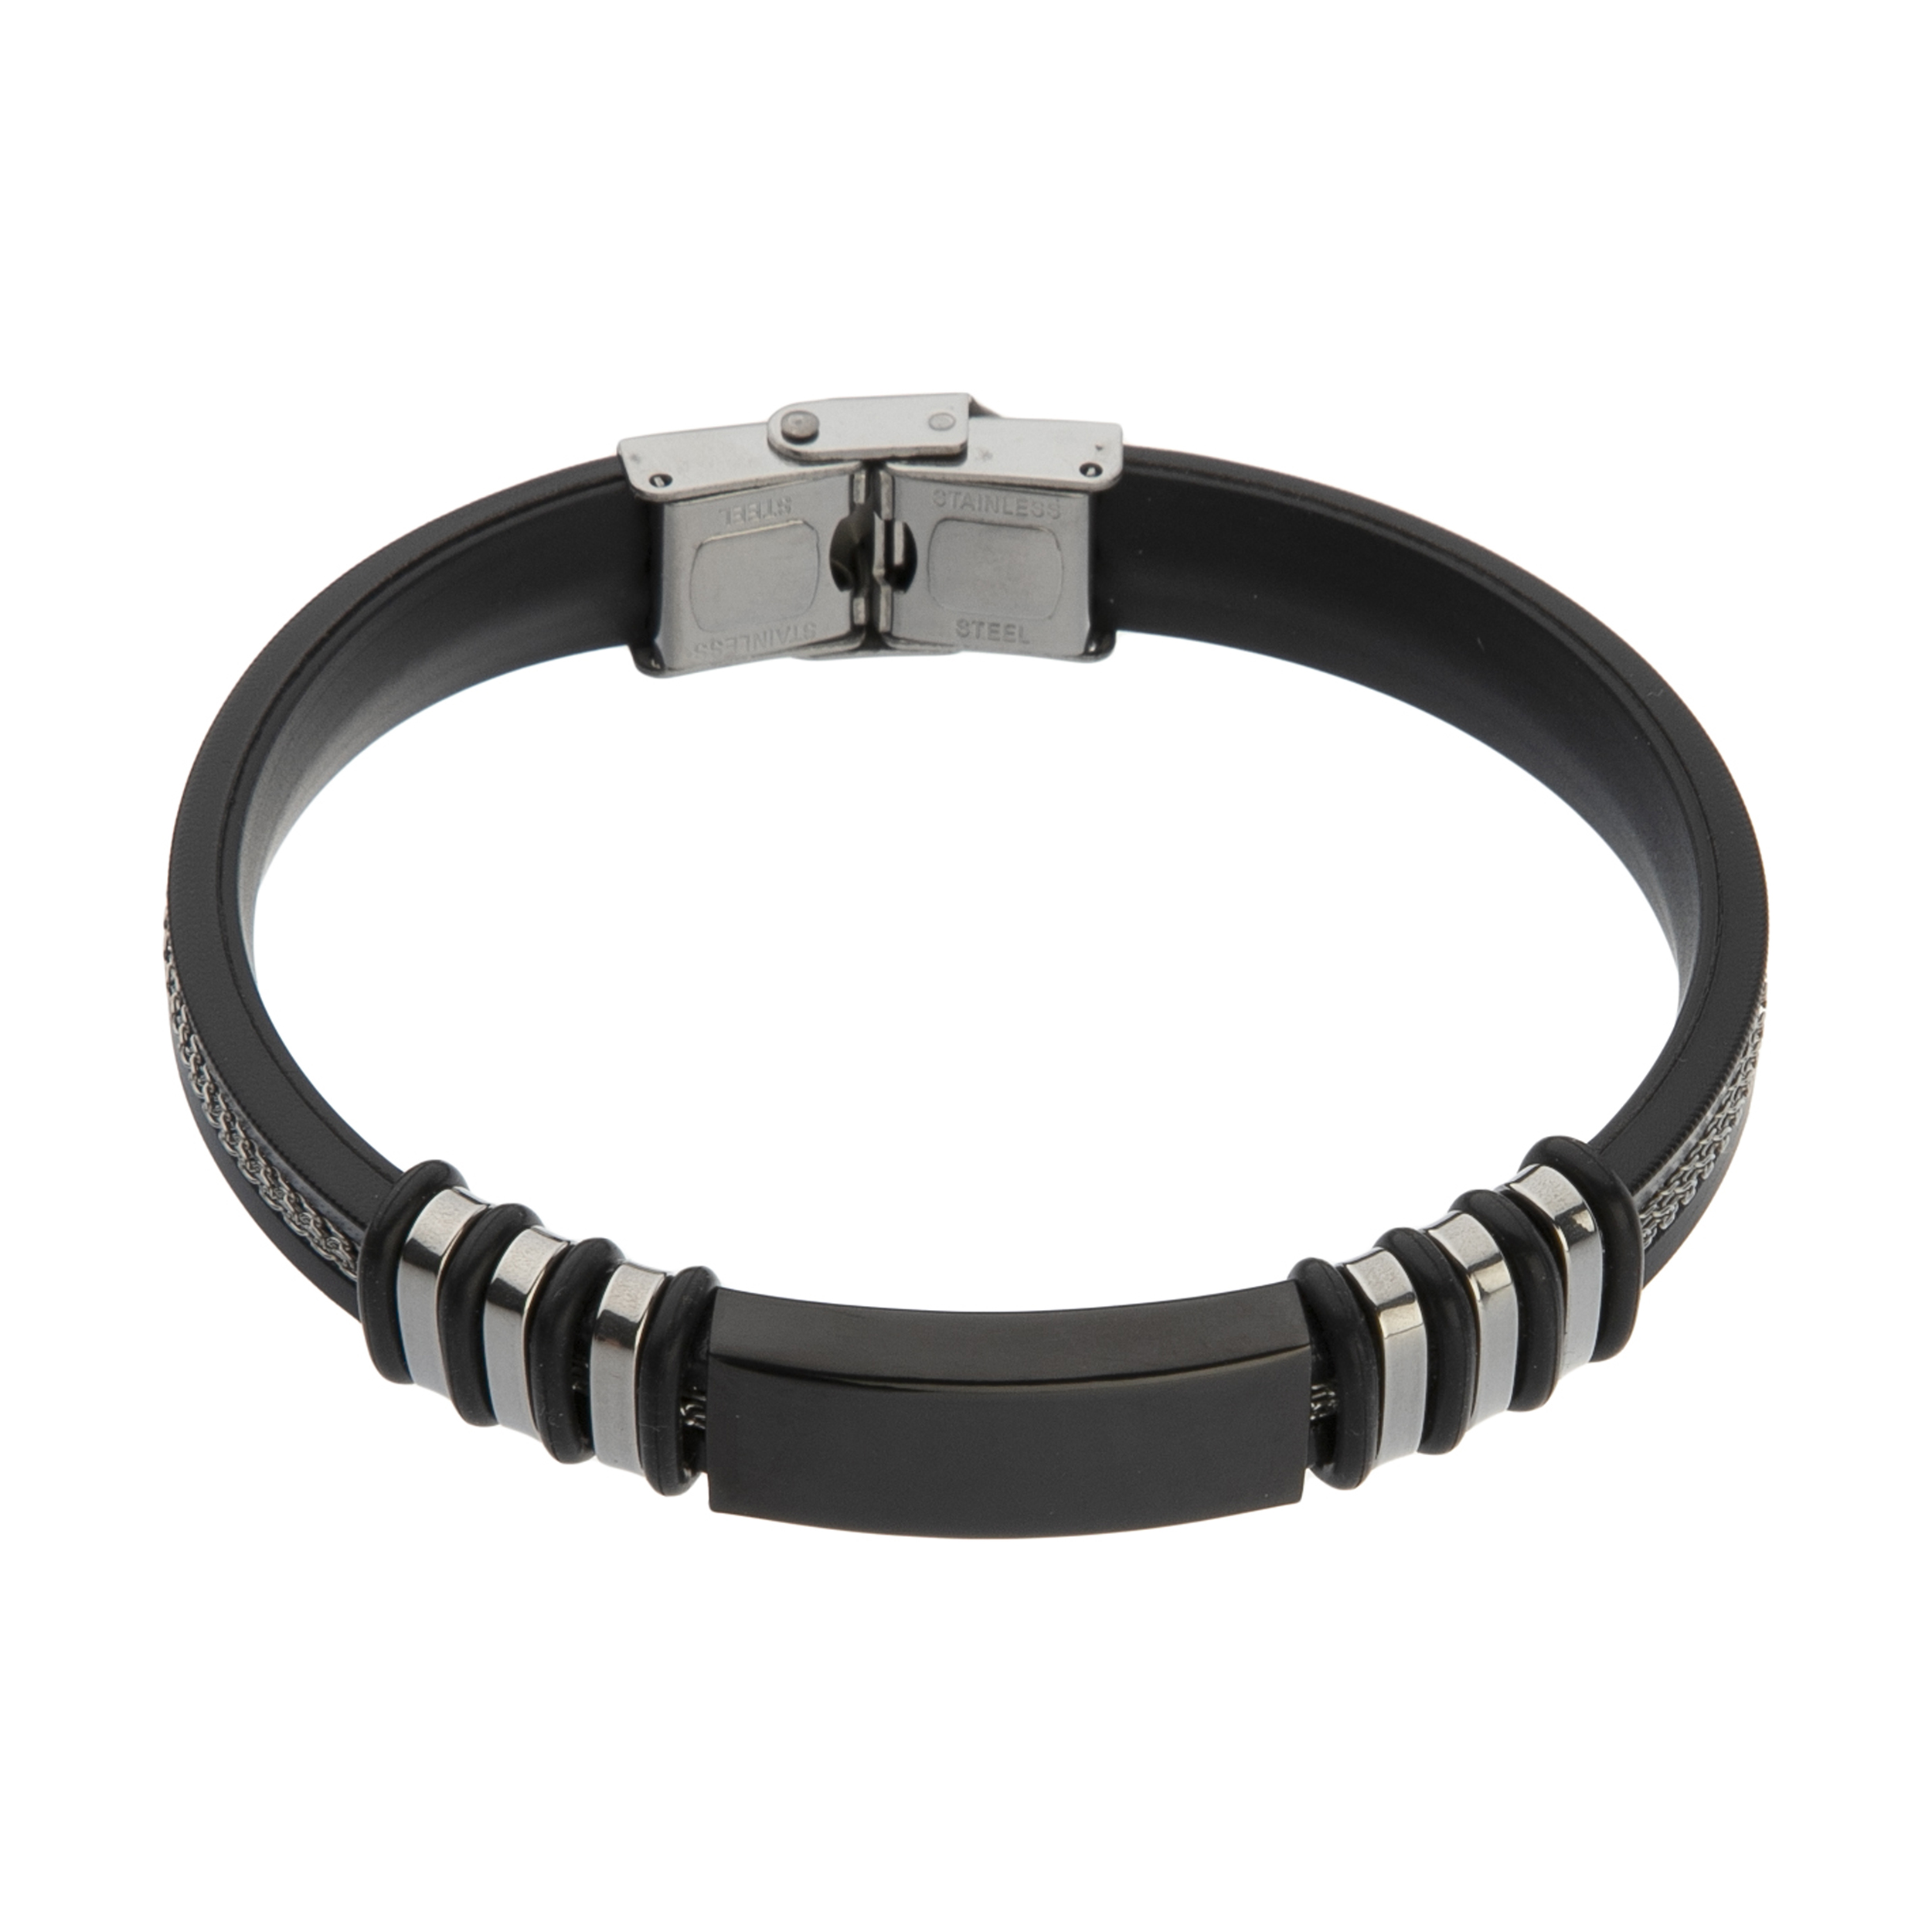  دستبند مردانه مدل DERI 791